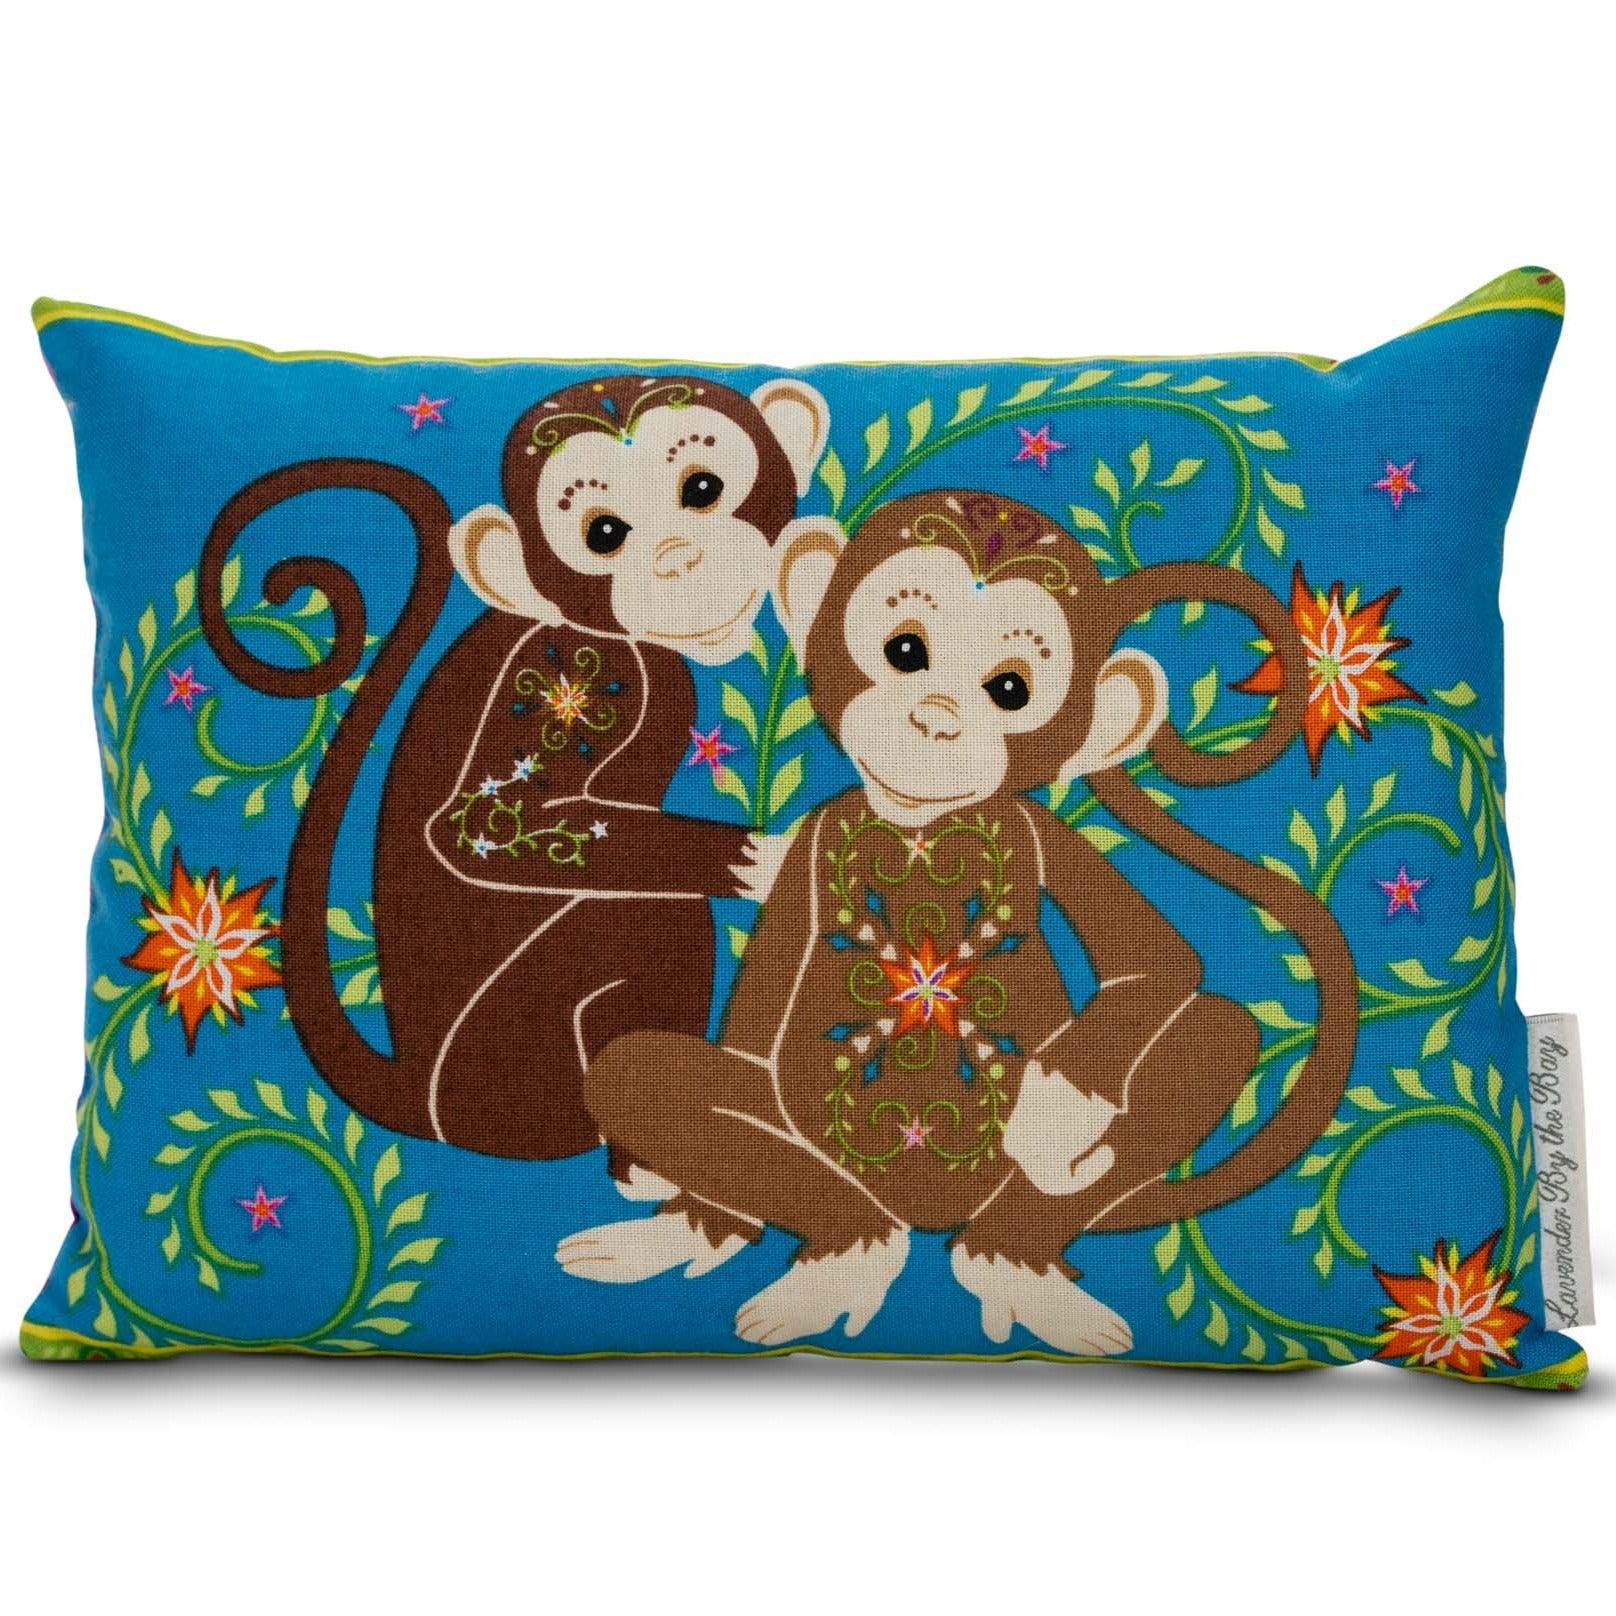 Monkey pillow